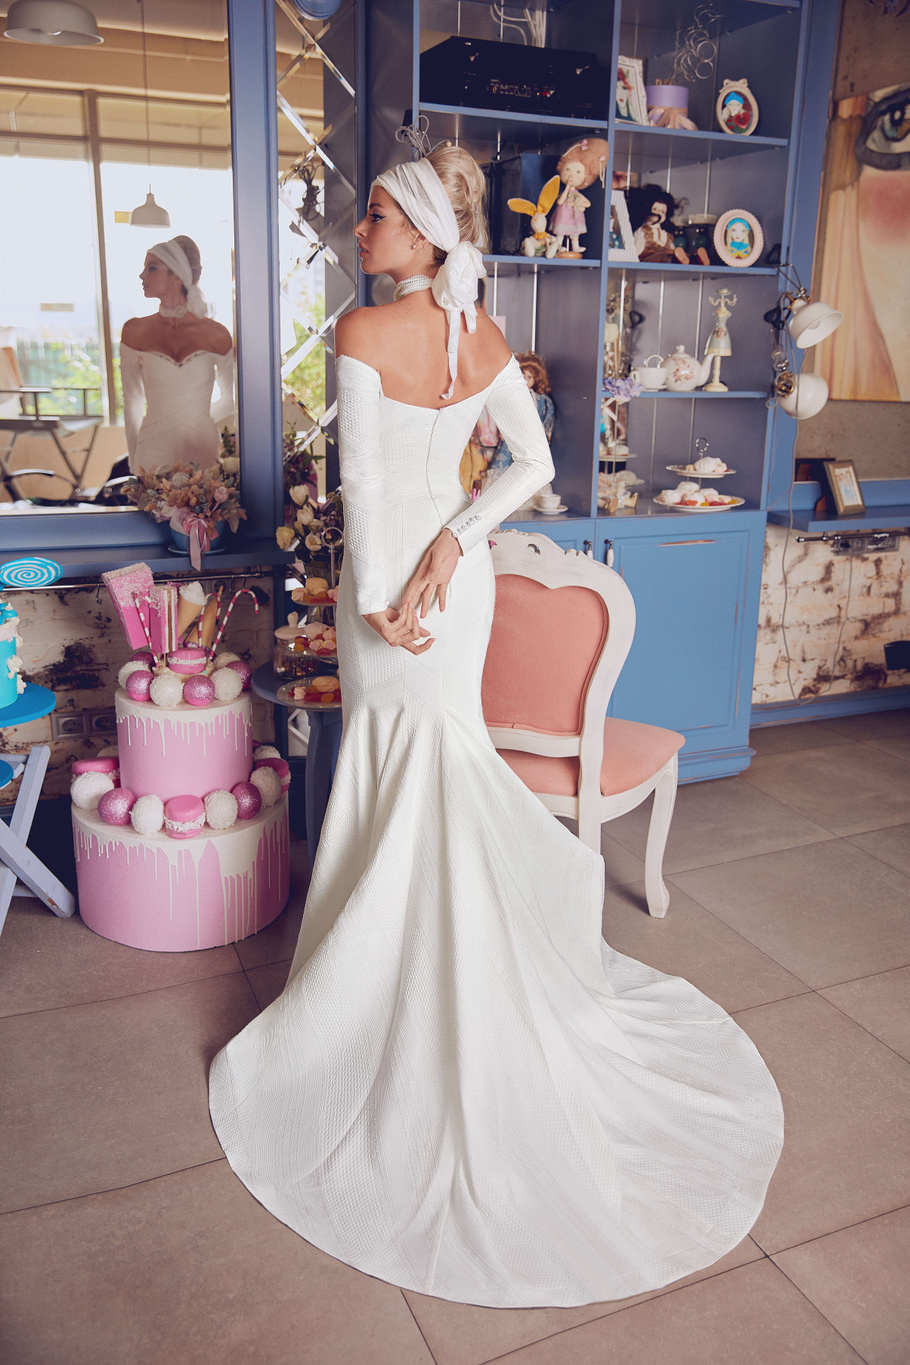 Купить свадебное платье «Азири» Бламмо Биамо из коллекции Свит Лайф 2021 года в Нижнем Новгороде